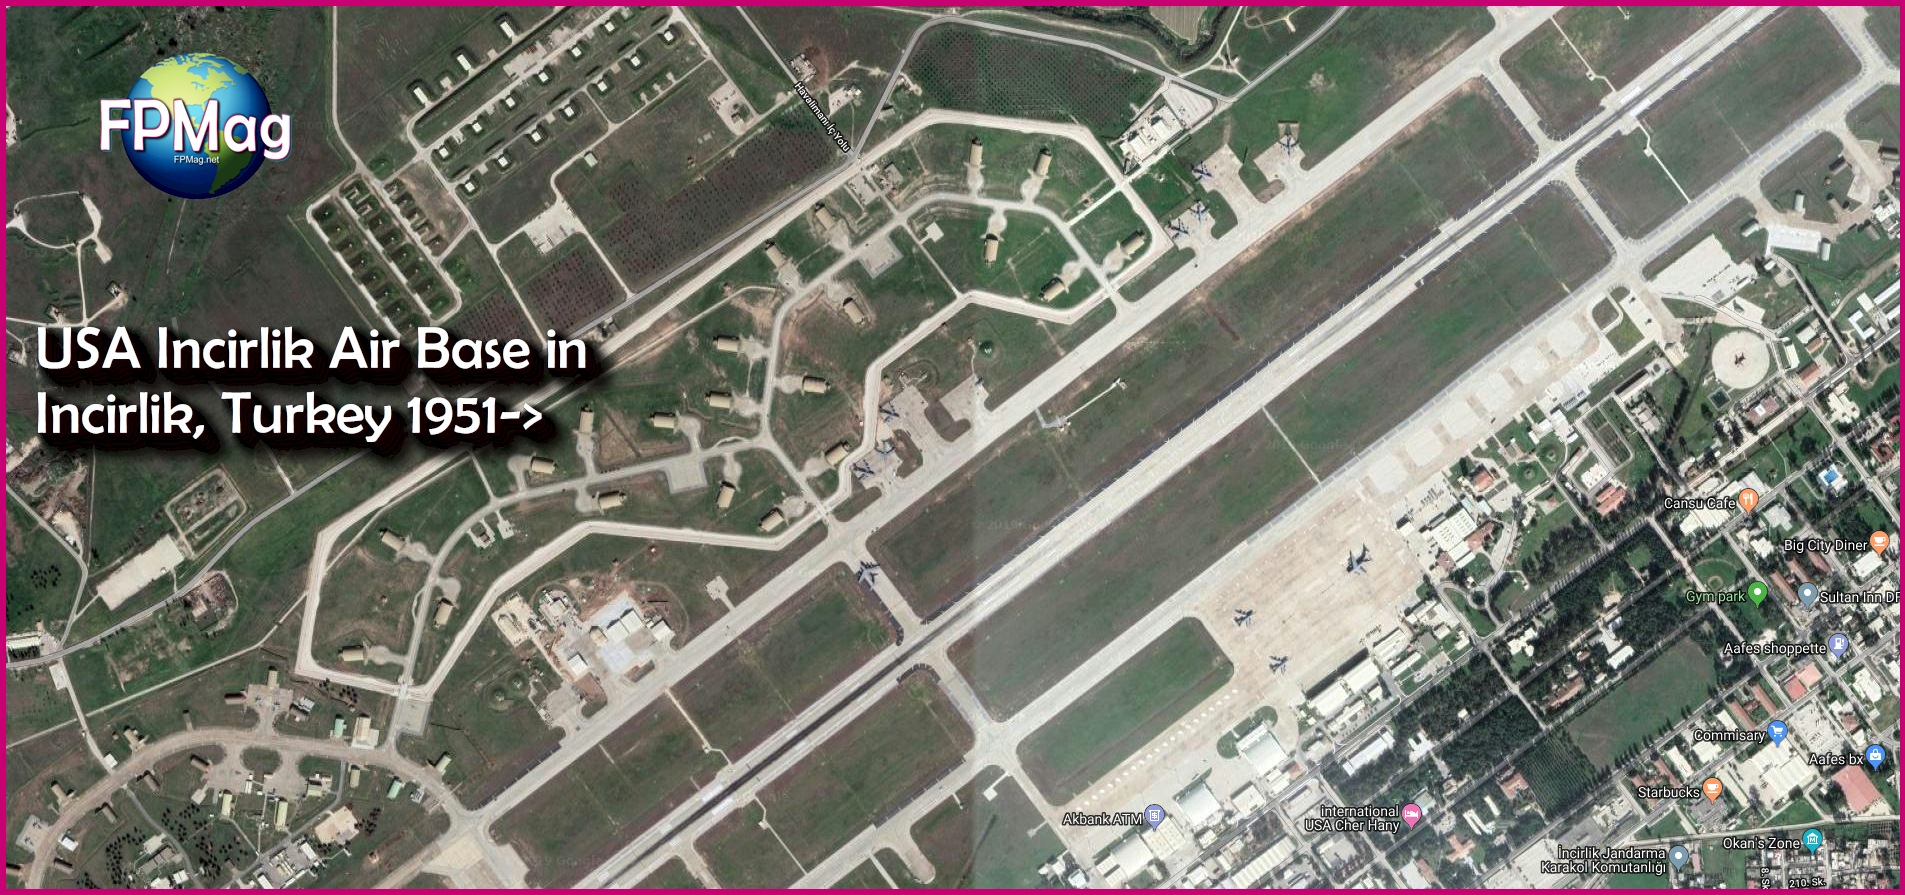 RINJ-Press-FPMag-Incirlik-USA-Air-Base-in-Incirlik-Turkey